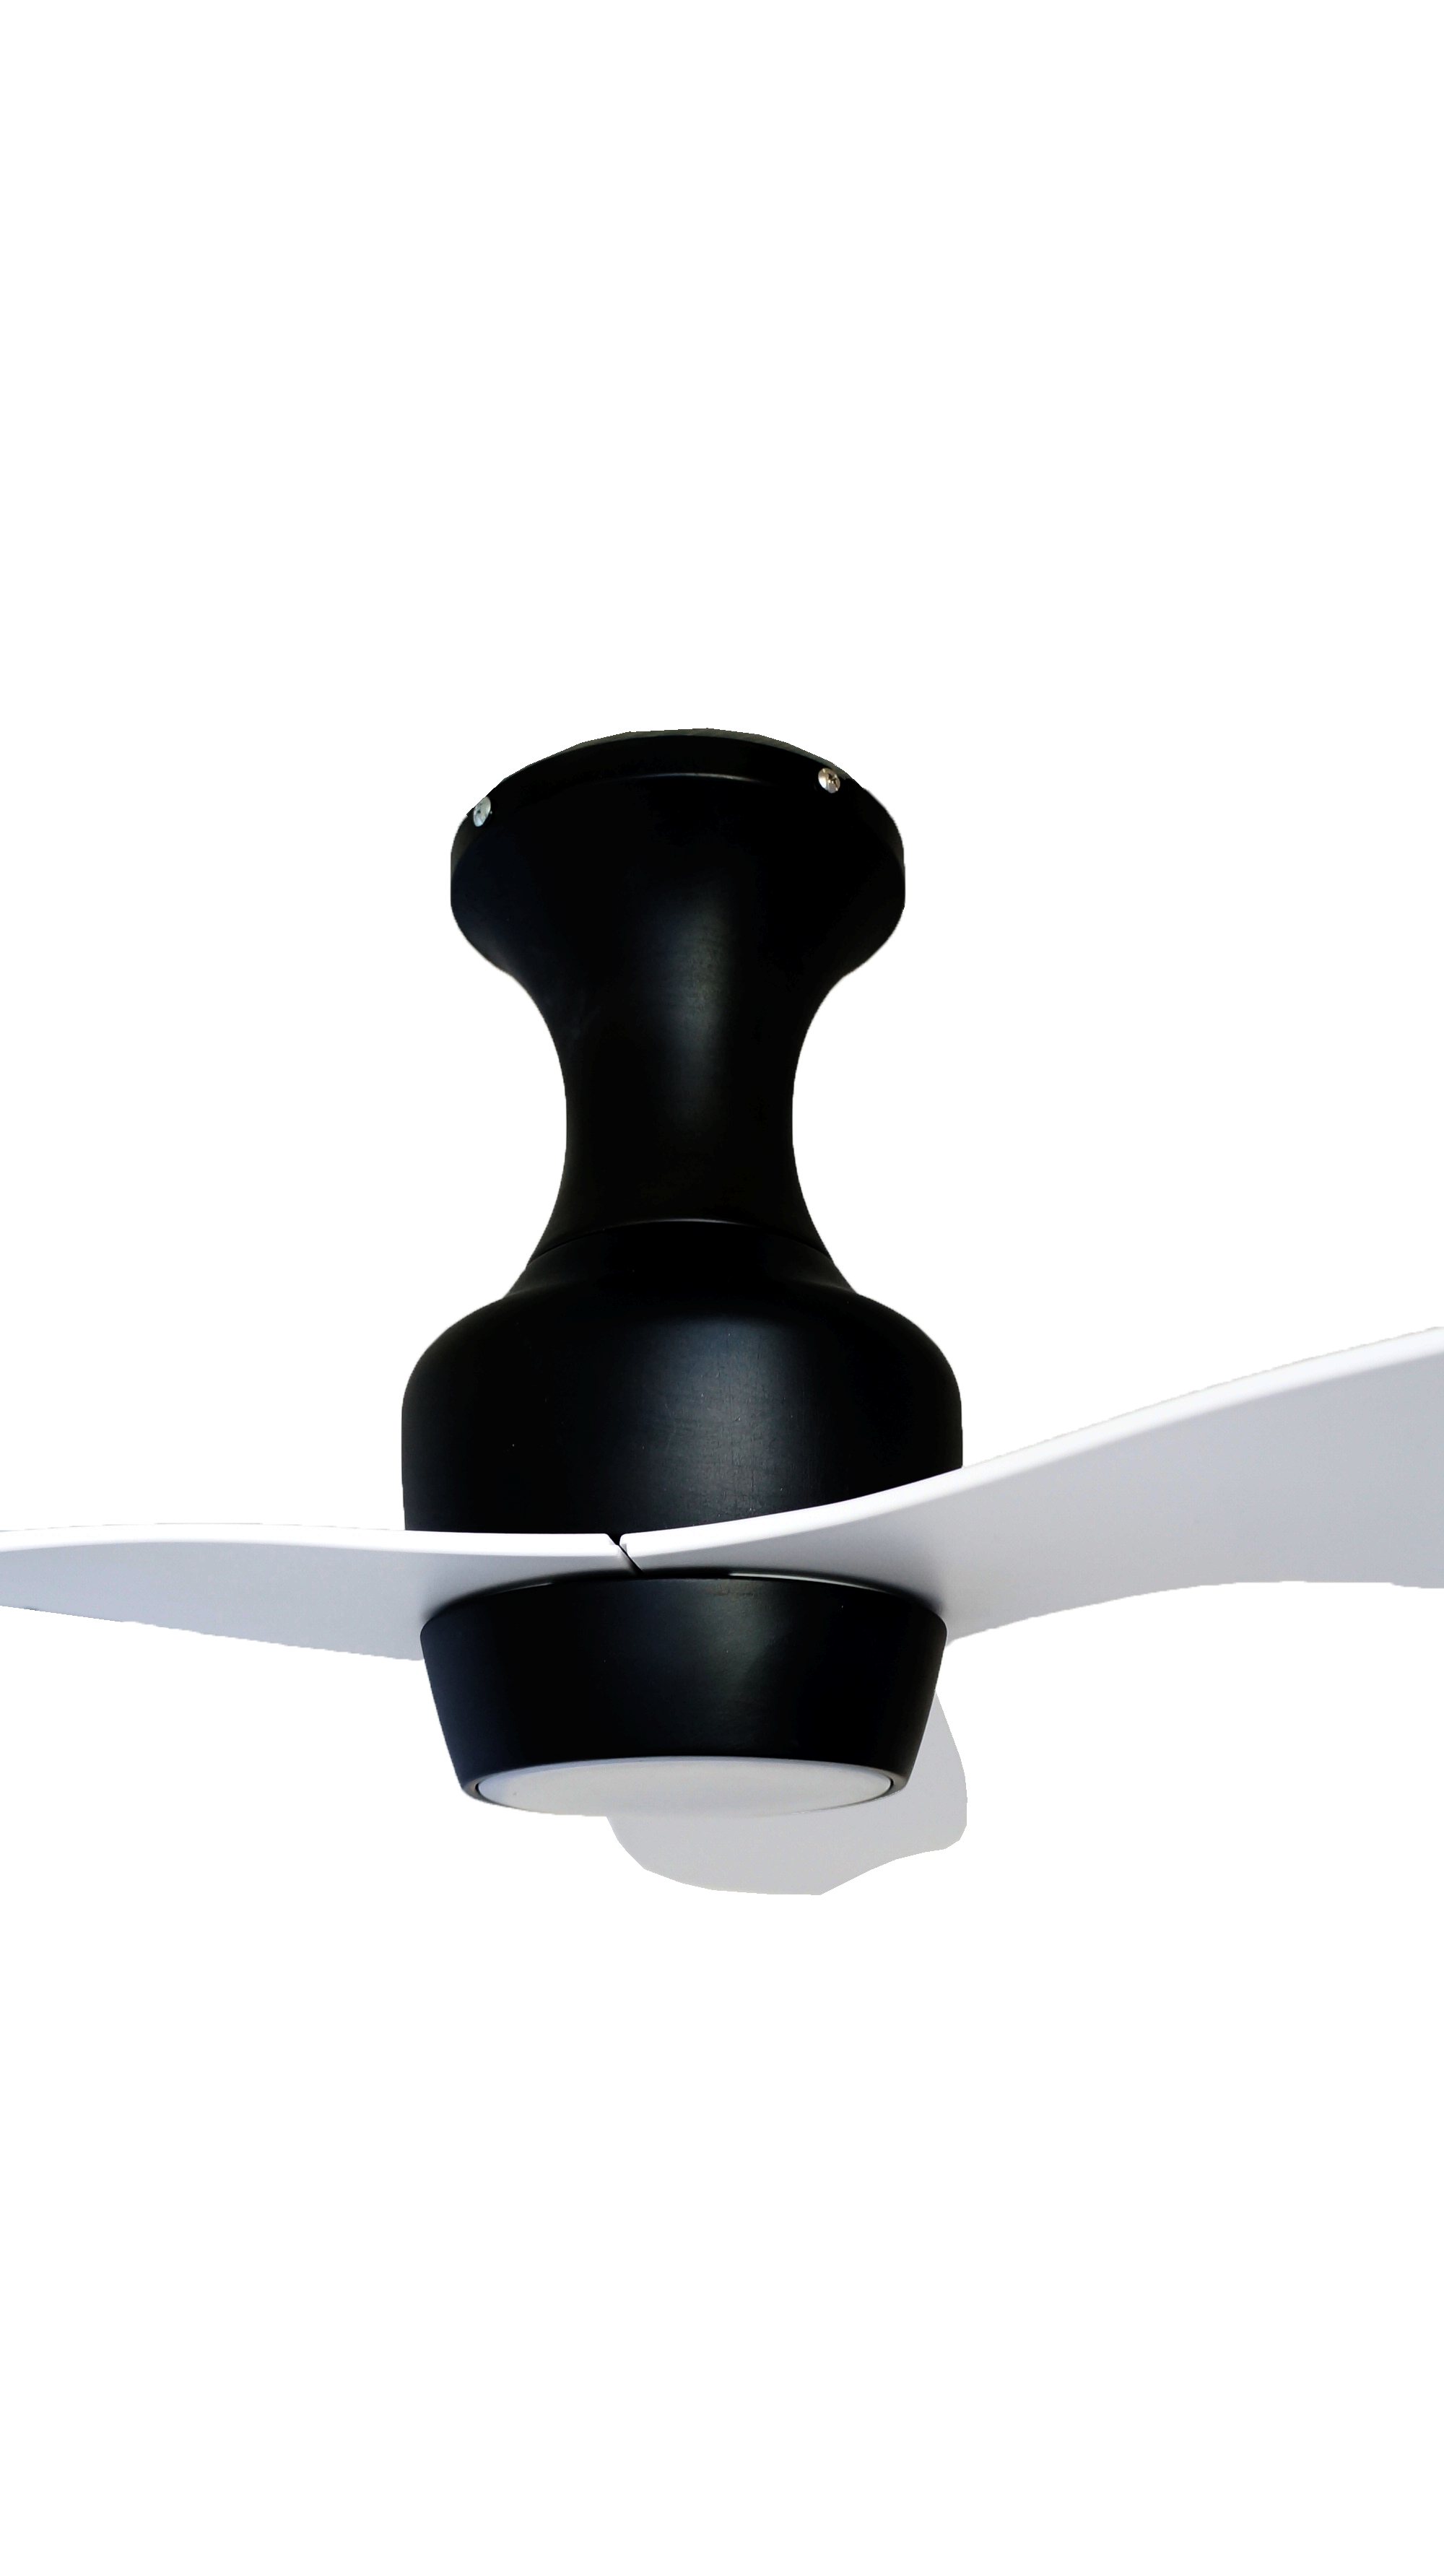 AirBena, moderno, inteligente, estable, silencioso, Motor de cobre, hoja de refrigeración por aire, atenuador, Control remoto inverso, LED, montaje empotrado, ventilador de luz de techo